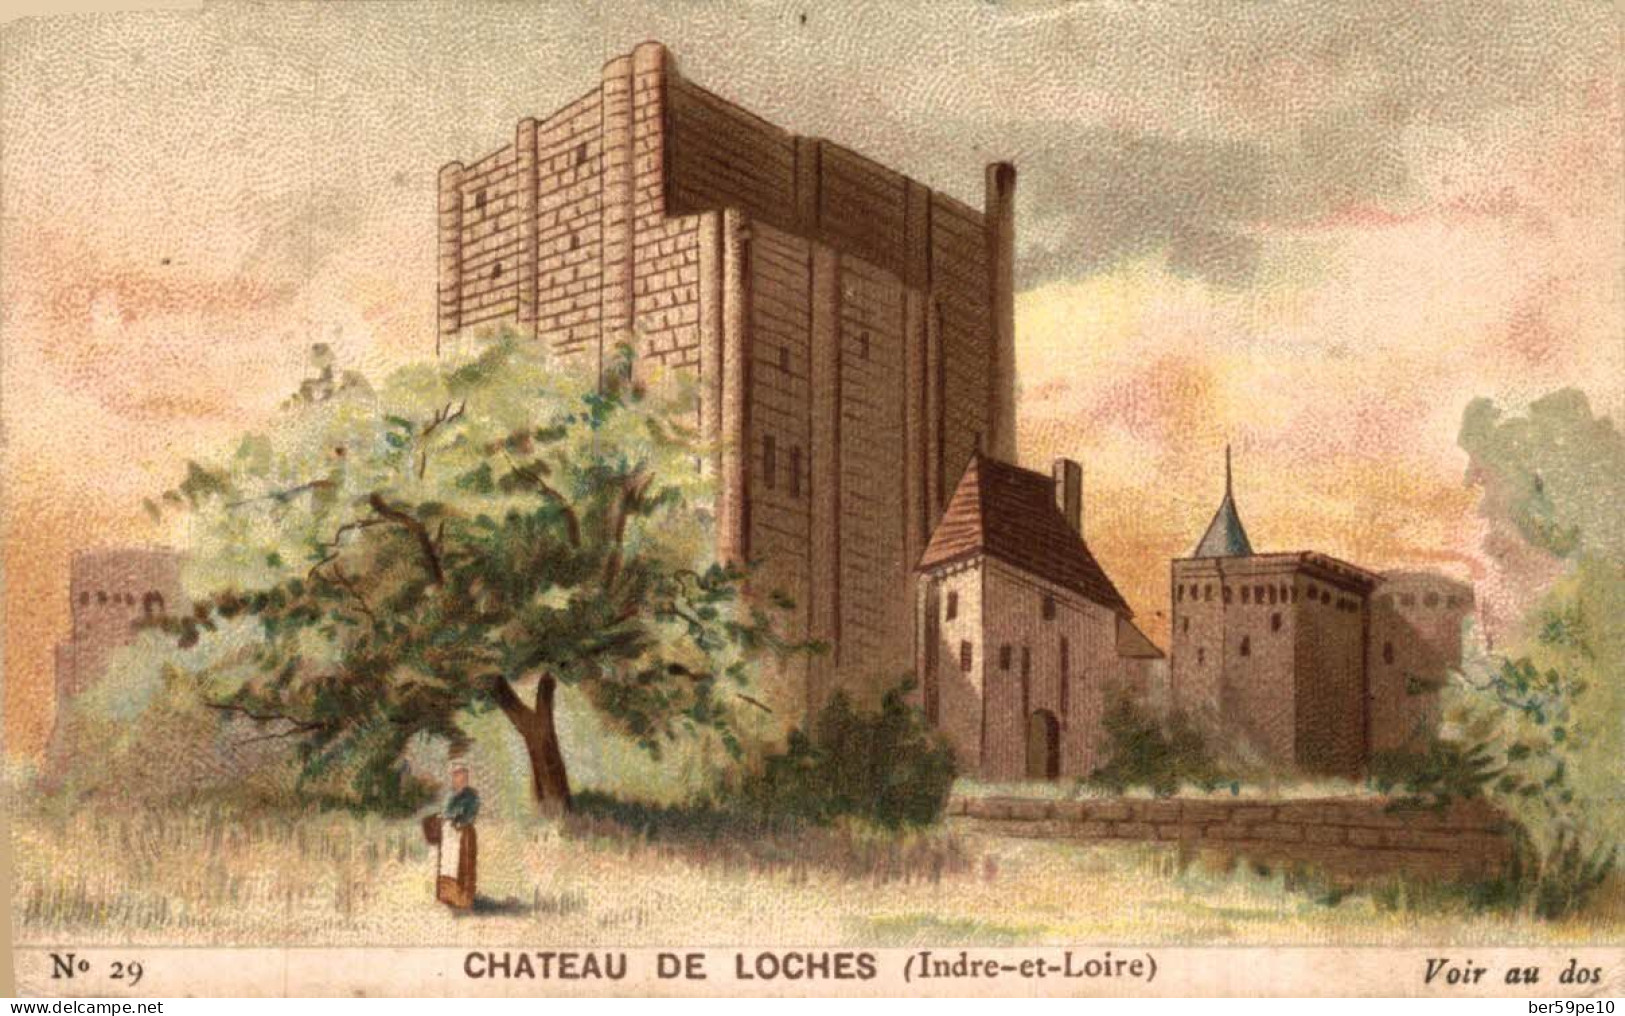 CHROMO CHOCOLAT GUERIN-BOUTRON CHATEAU DE LOCHE (INDRE ET LOIRE) - Guérin-Boutron